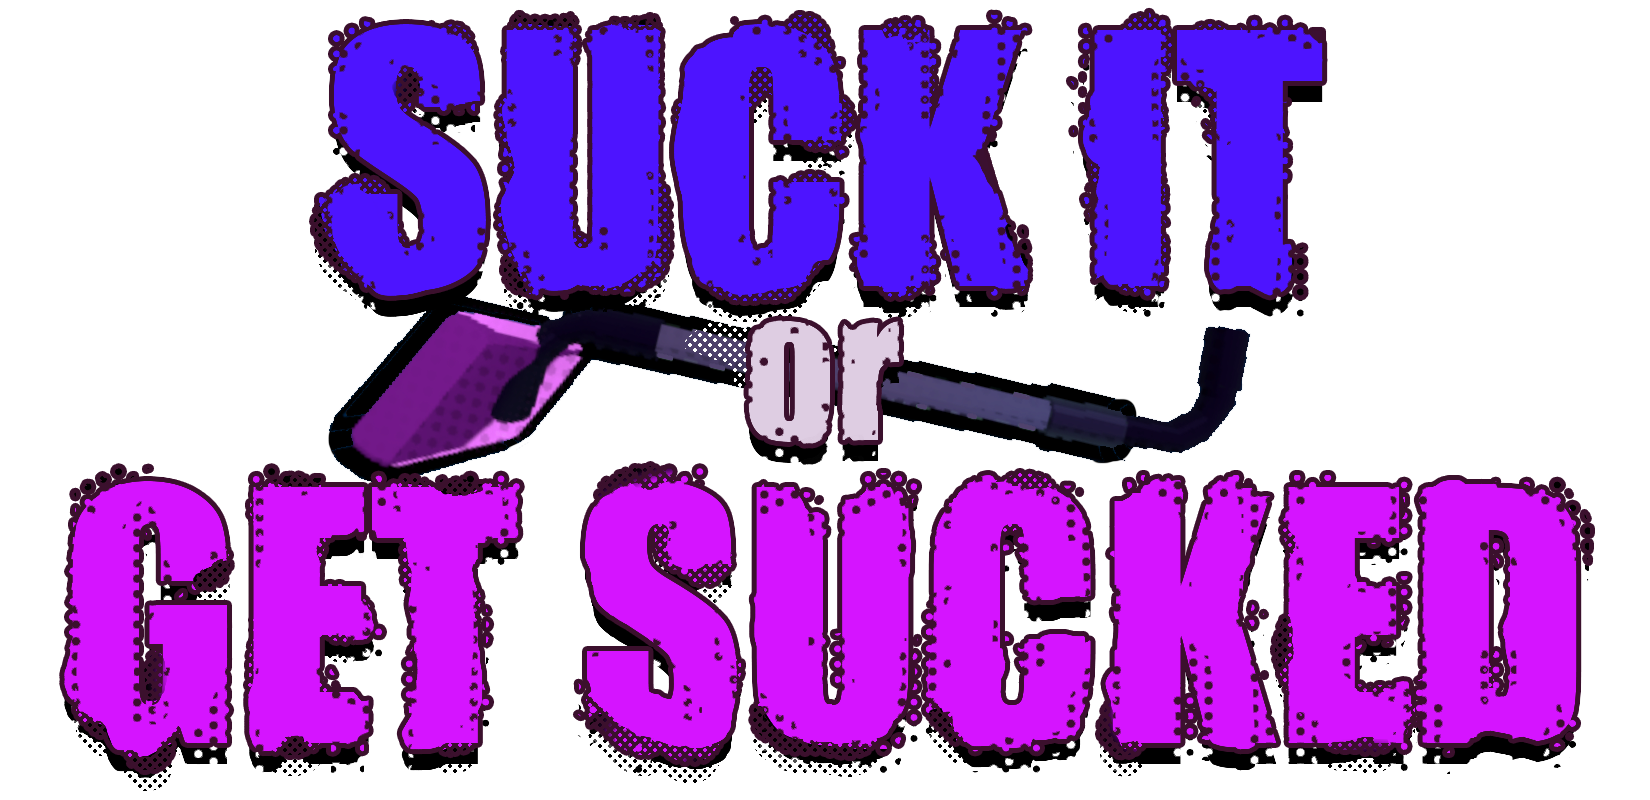 Suck It or Get Sucked